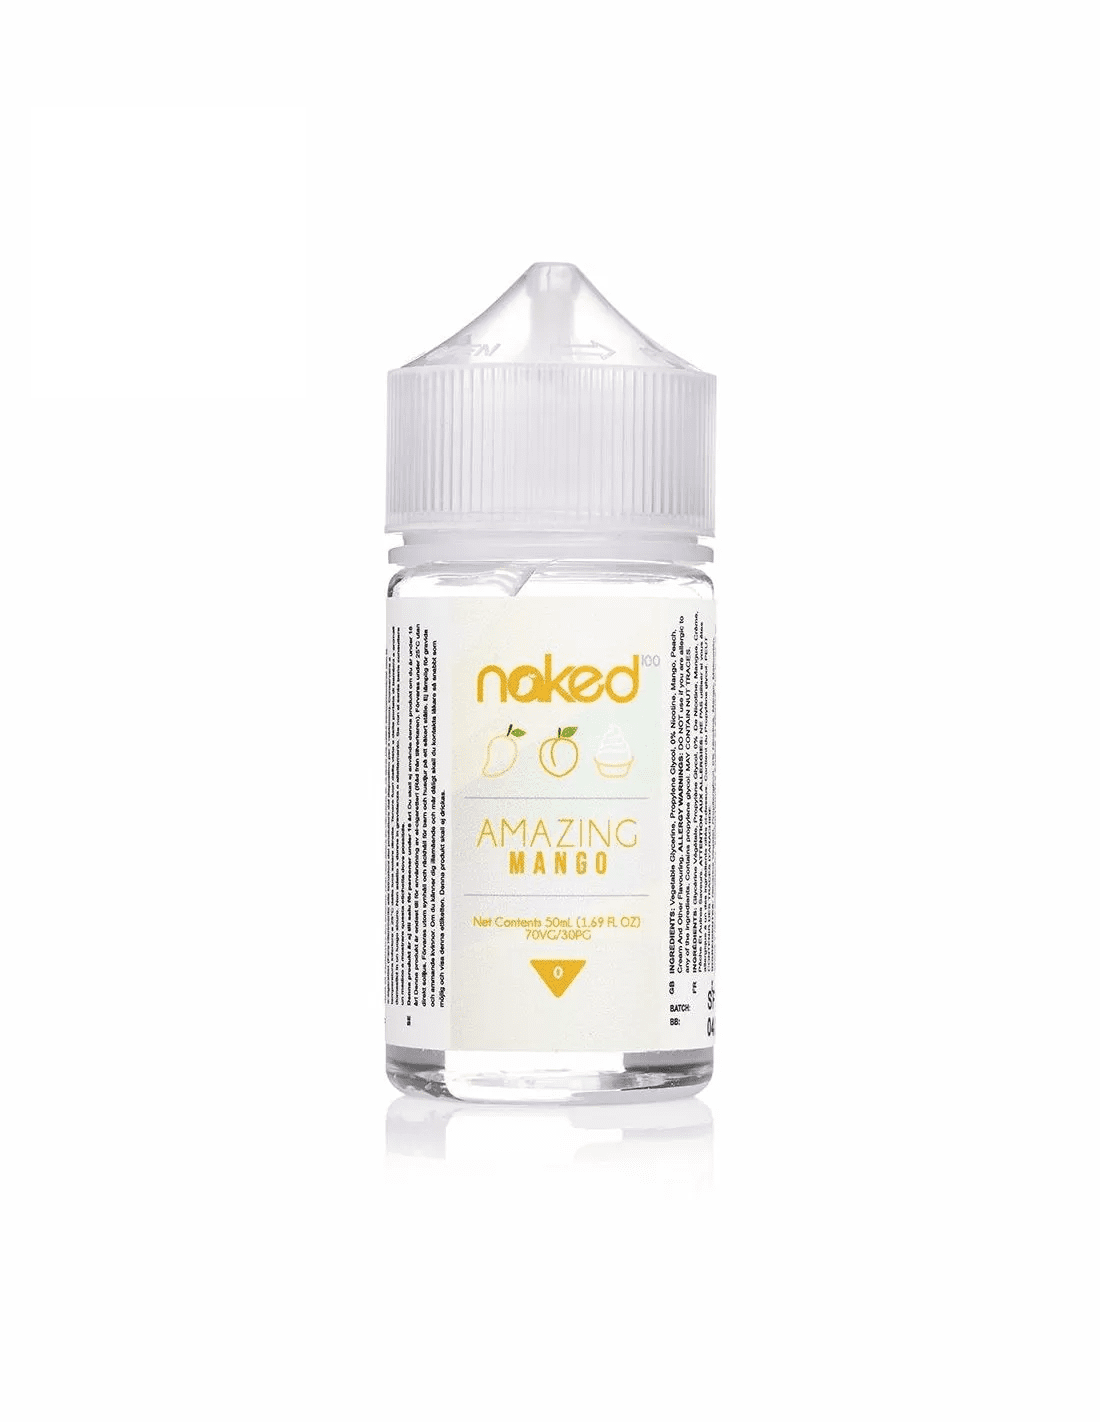 Naked 100 - Amazing Mango - 50ml